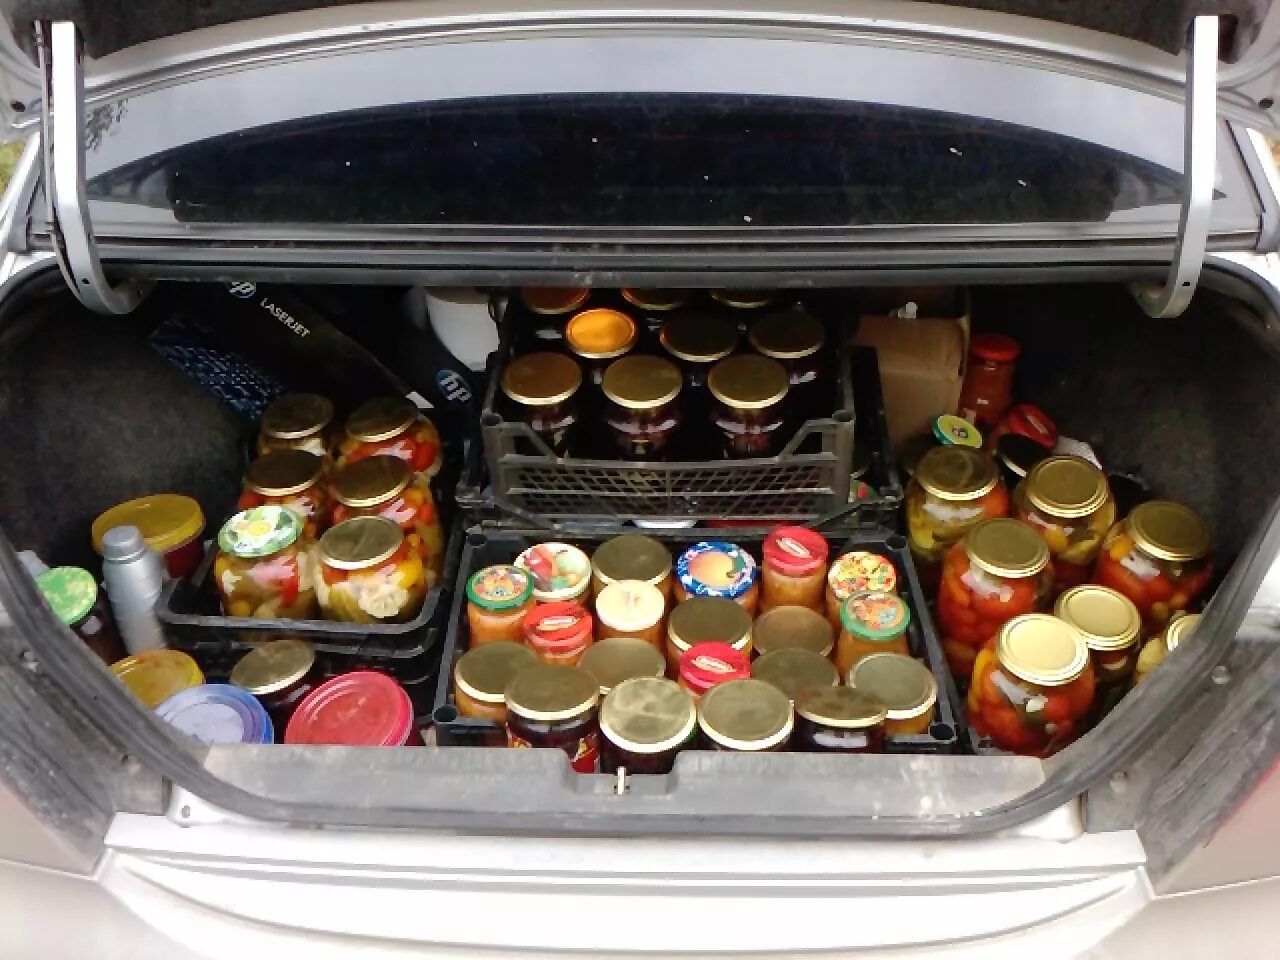 Купить банку на машину. Полный багажник продуктов. Багажник с продуктами. Полный багажник овощей. Банки в багажнике.